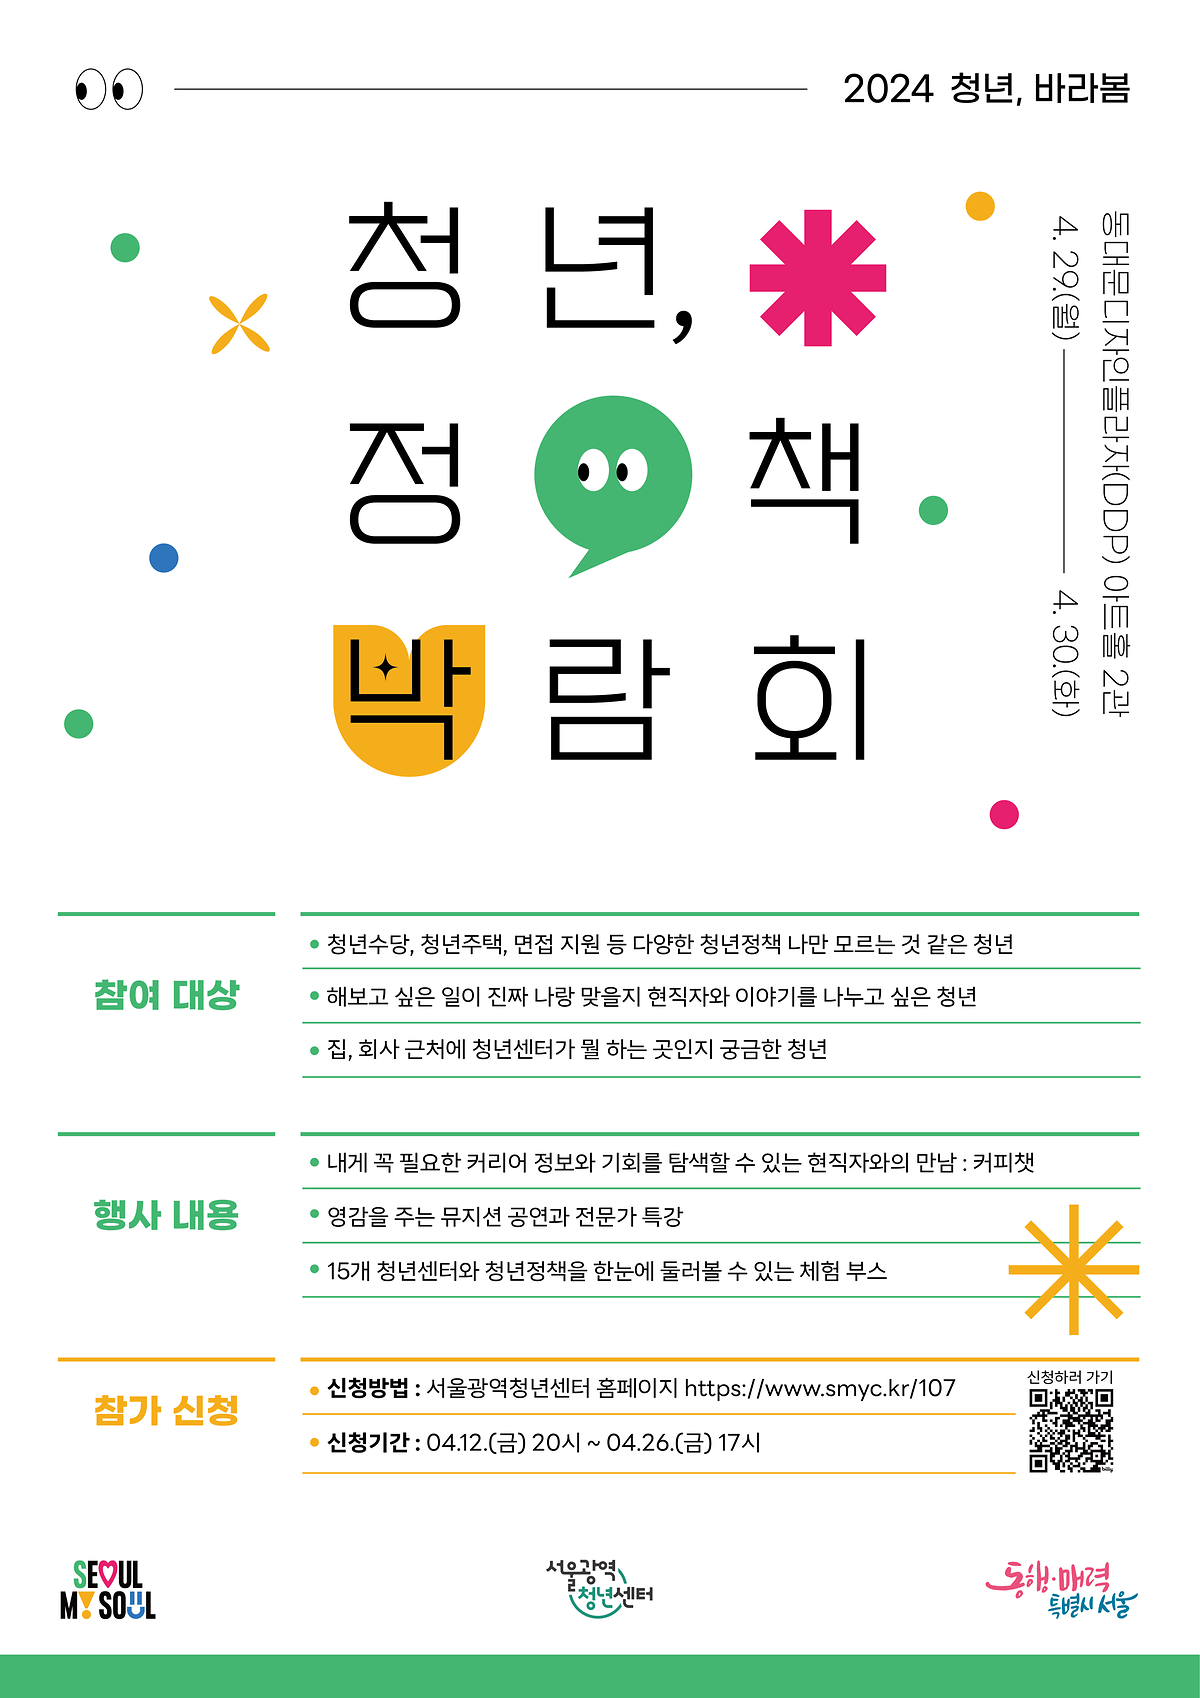 [마감] 2024 서울청년정책박람회 “청년, 바라봄” 사진